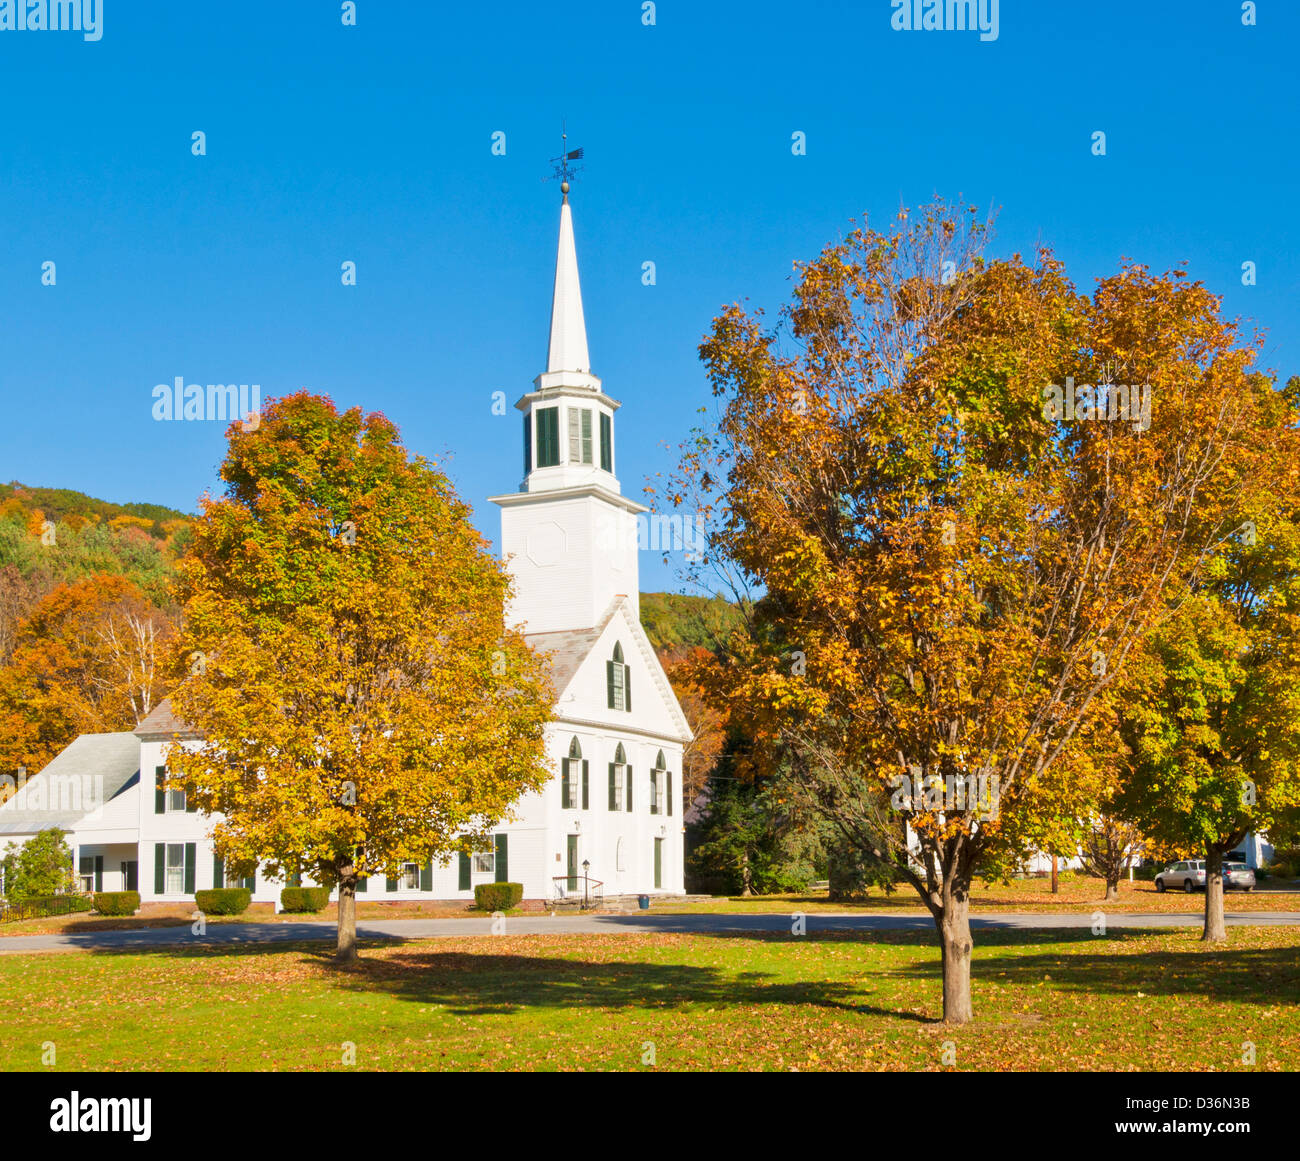 Colores de otoño alrededor de la iglesia, revestido de madera blanca tradicional Townshend, Vermont, Estados Unidos de América EE.UU. Foto de stock